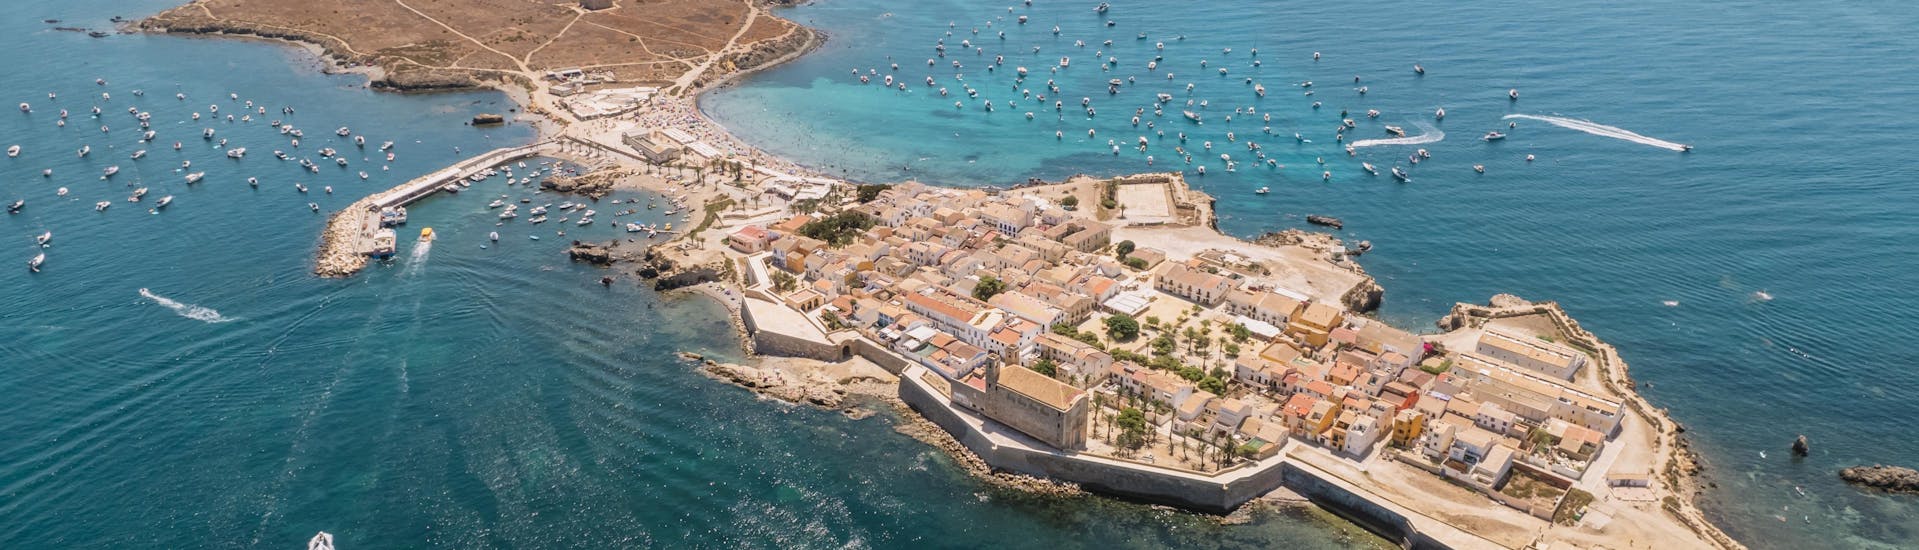 Luchtfoto van boten die het eiland Tabarca in Alicante bereiken.